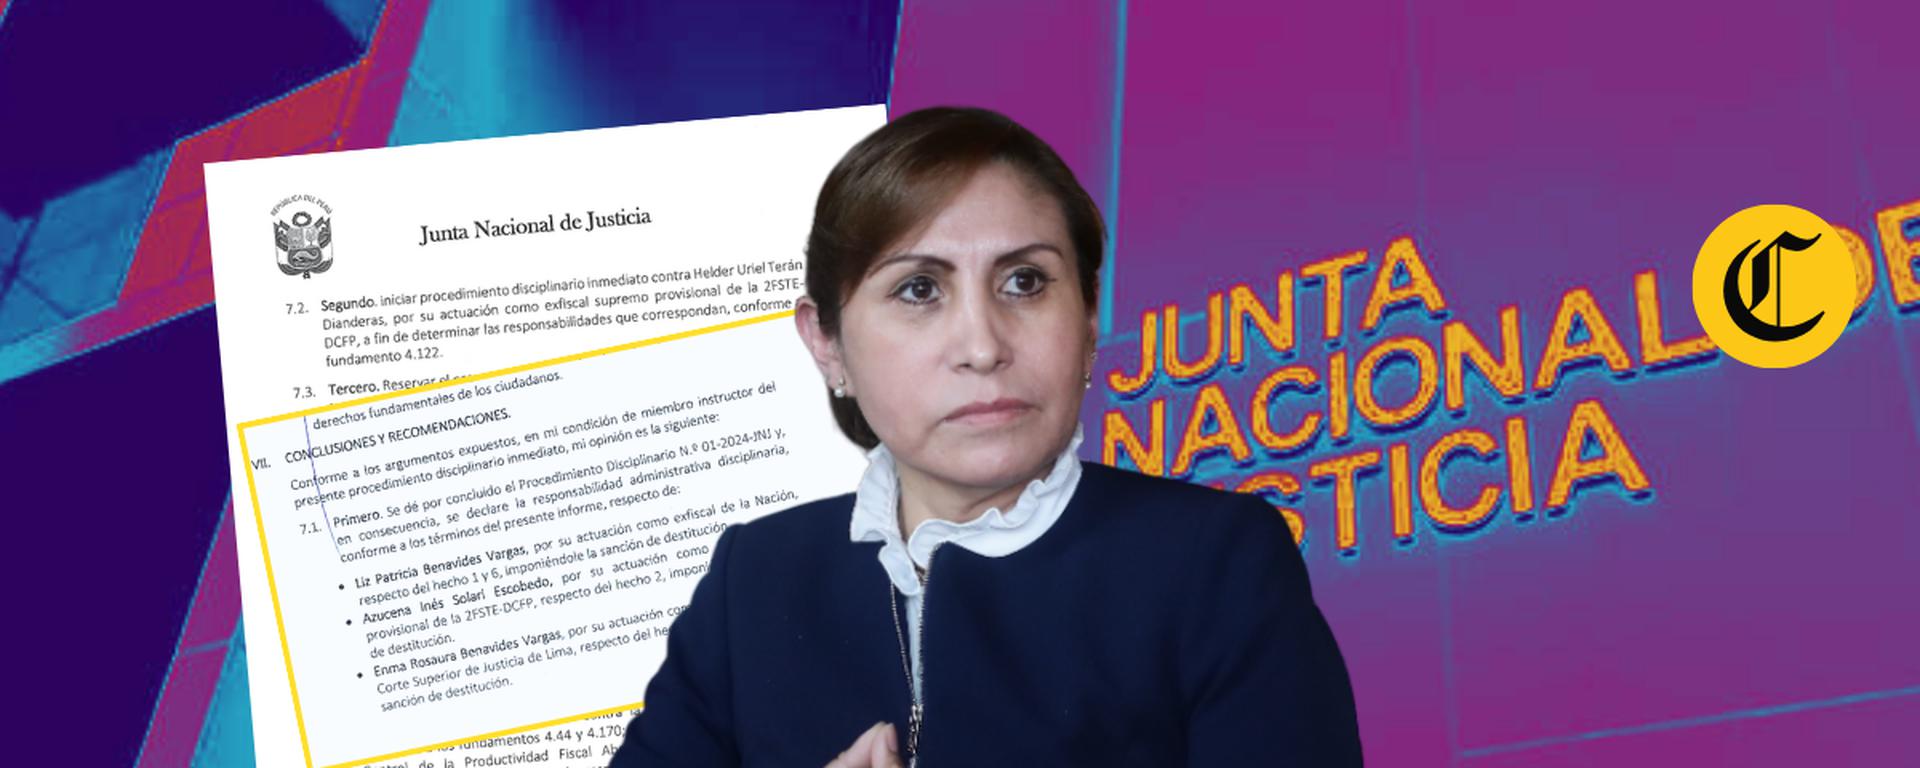 Inés Tello, ponente de JNJ, pide la destitución de Patricia Benavides: ¿Qué dice el informe listo para ser debatido?